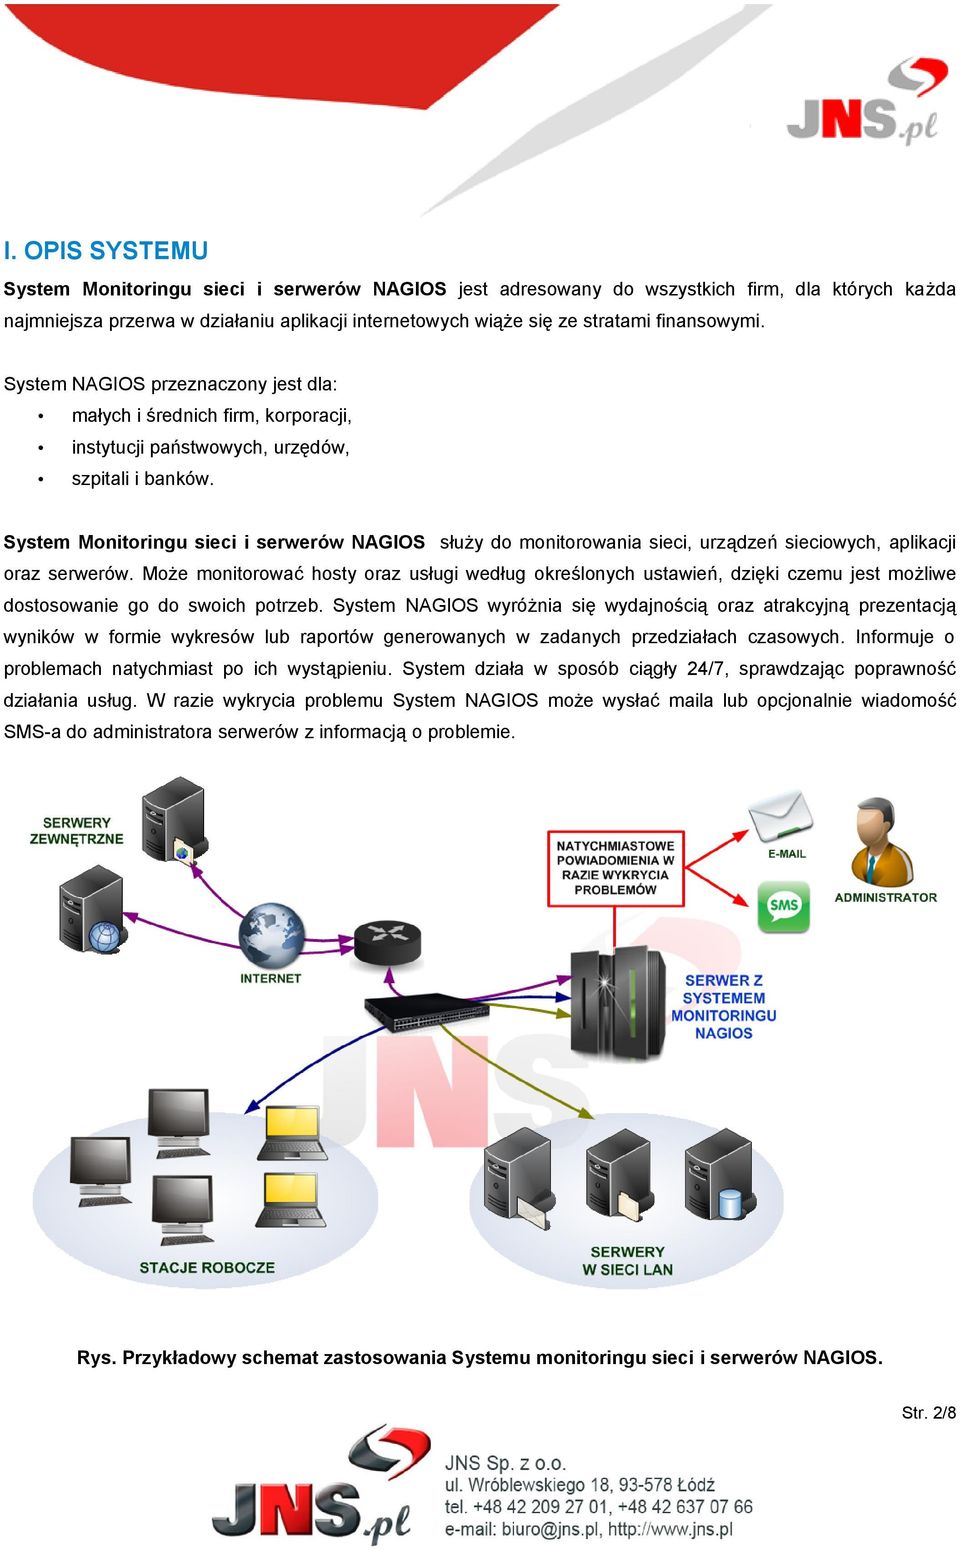 System Monitoringu sieci i serwerów NAGIOS służy do monitorowania sieci, urządzeń sieciowych, aplikacji oraz serwerów.